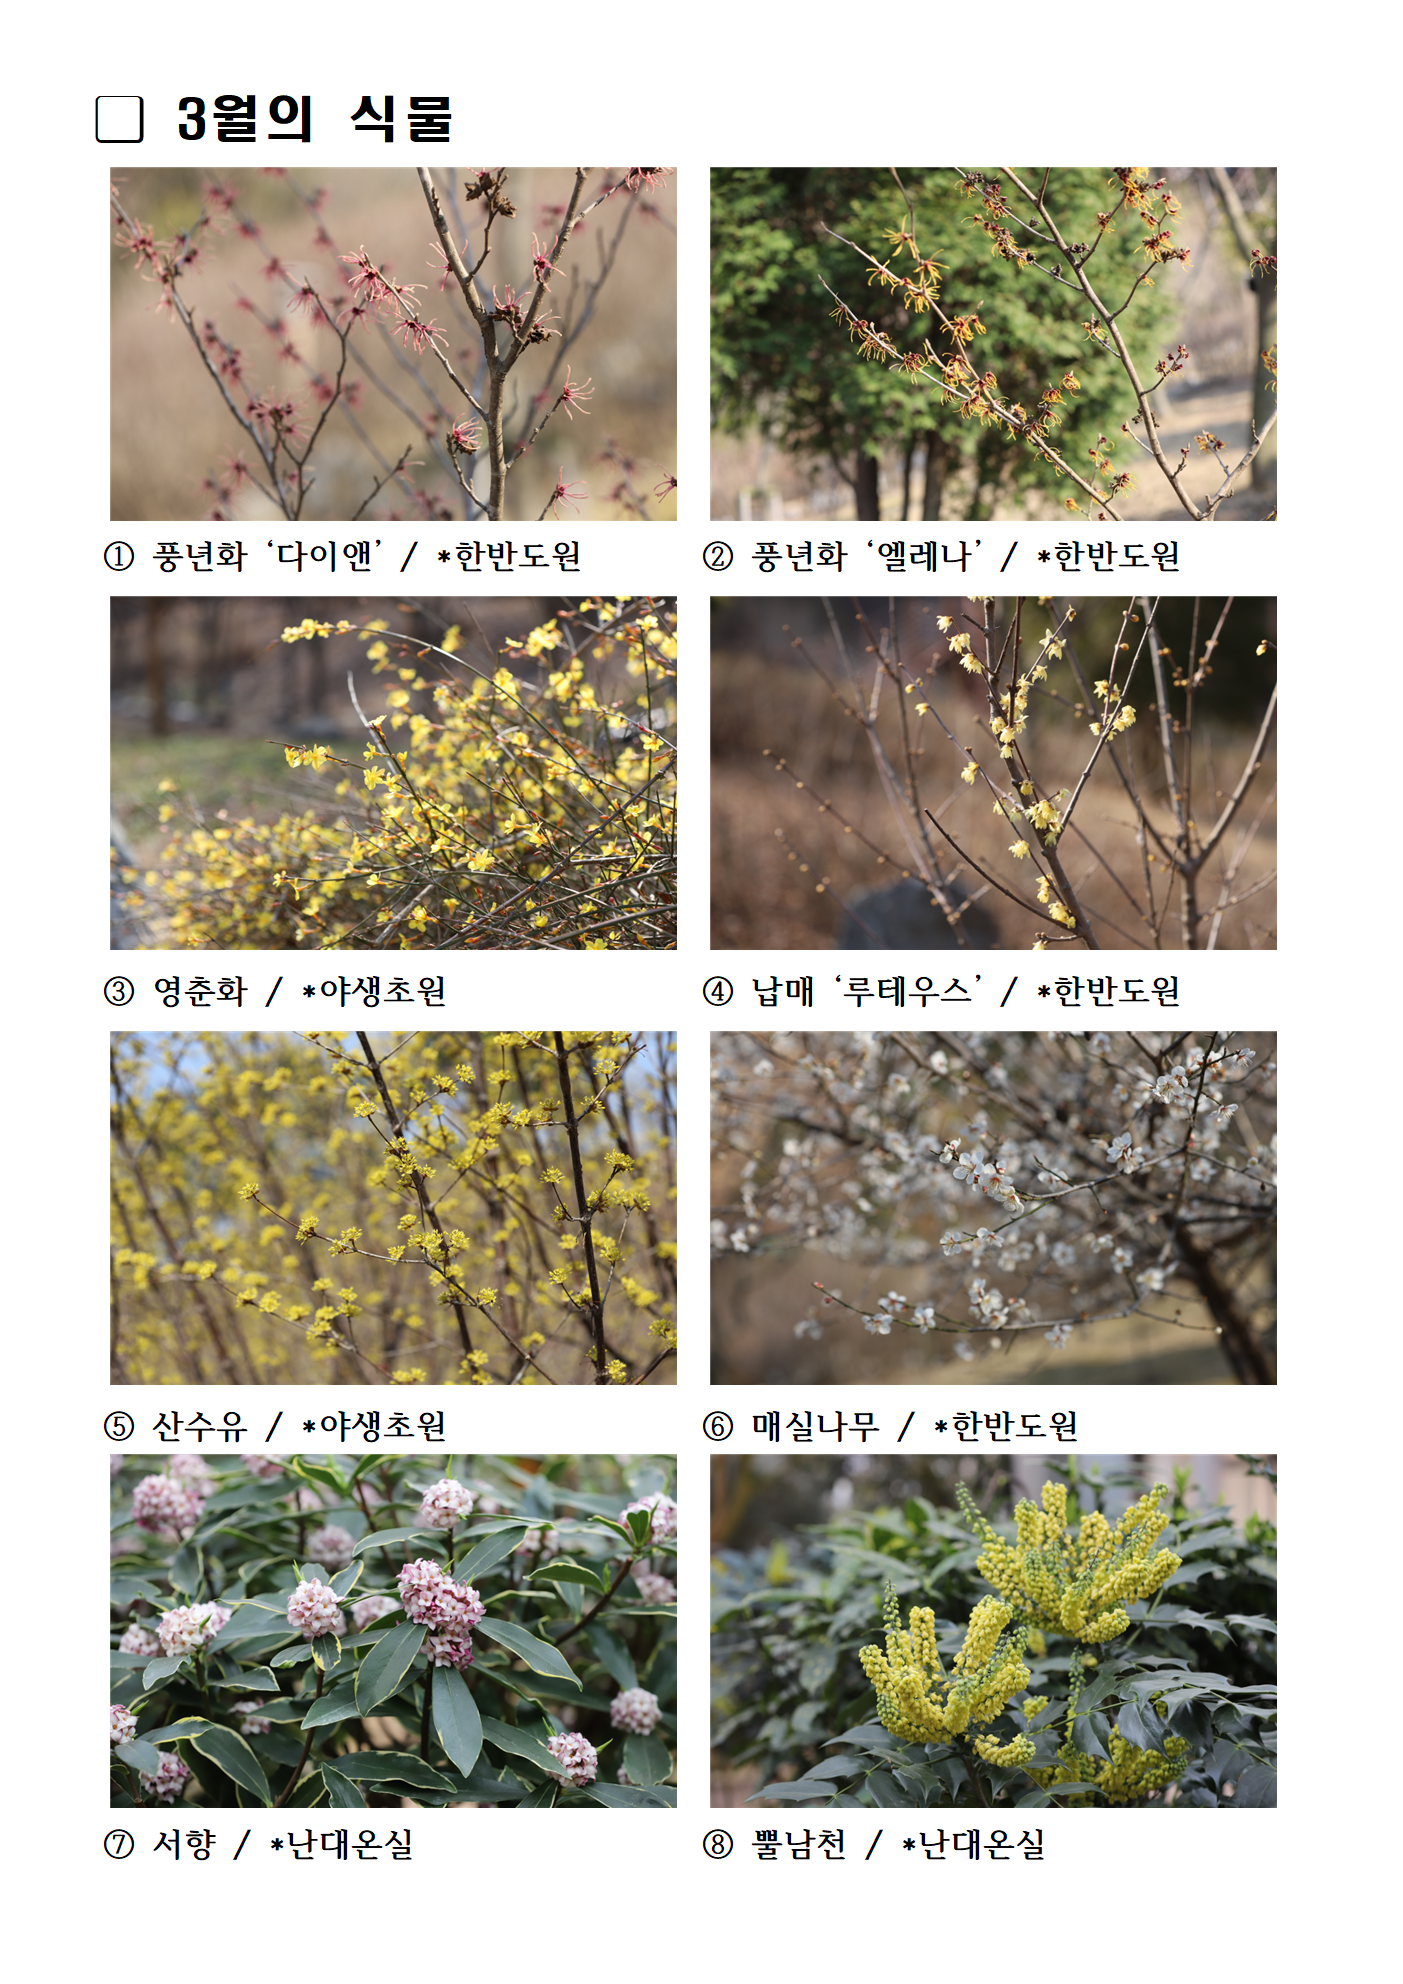 3월의 식물